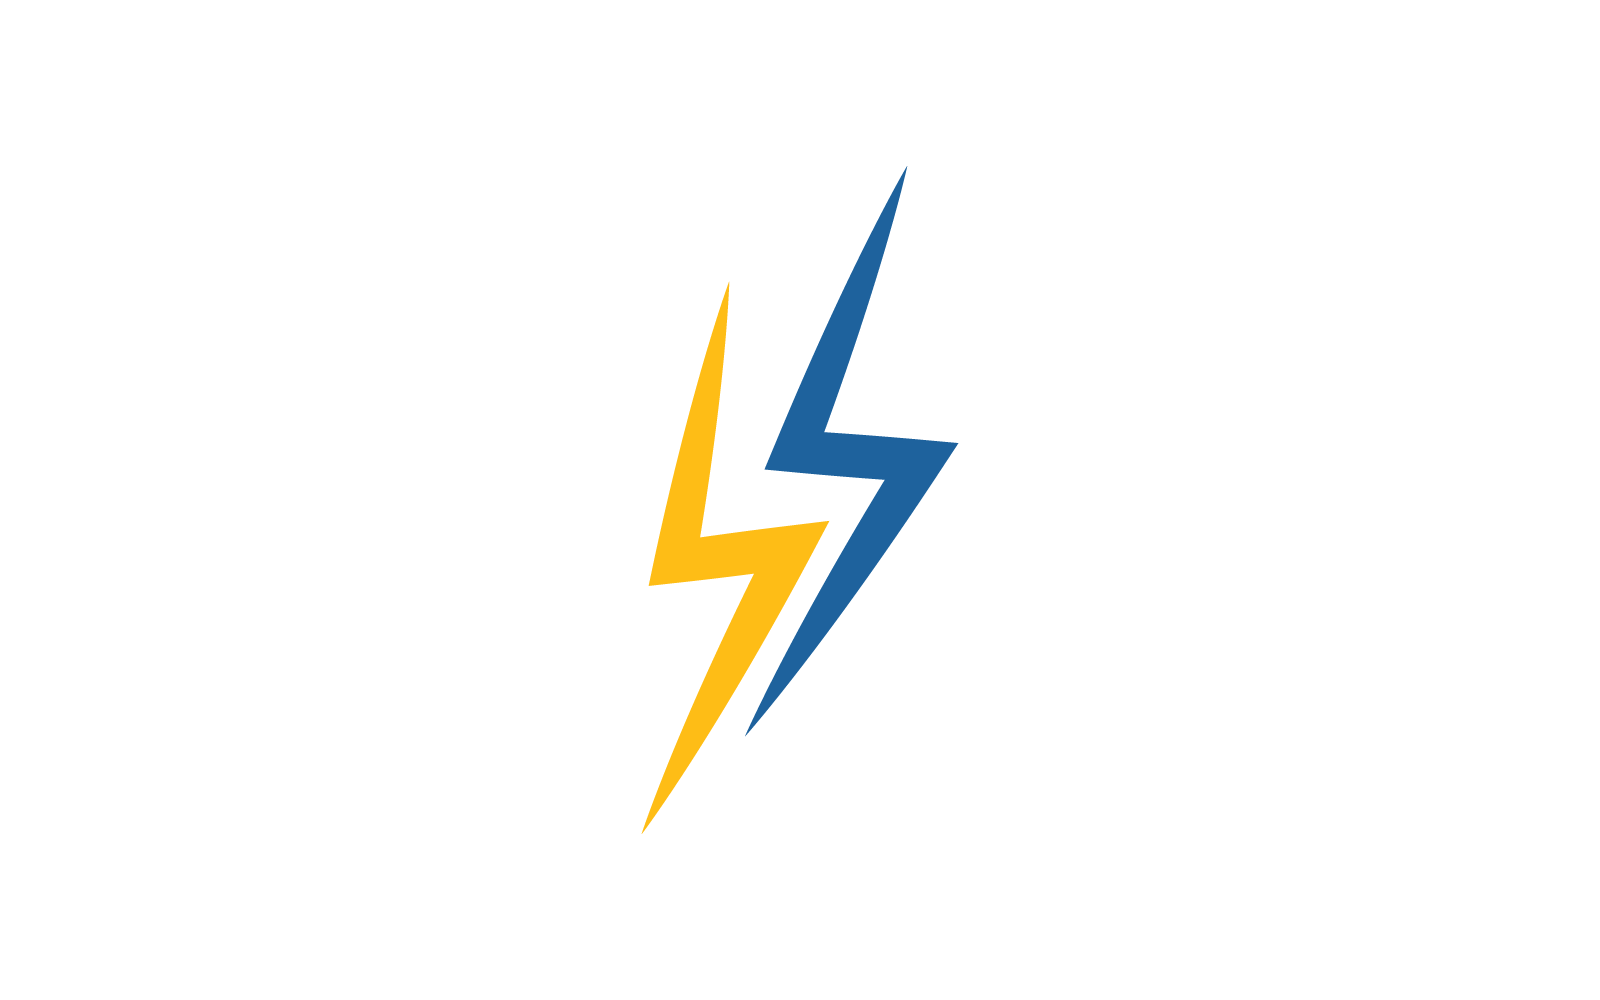 Power lightning power energy logo icon illustration vector Logo Template